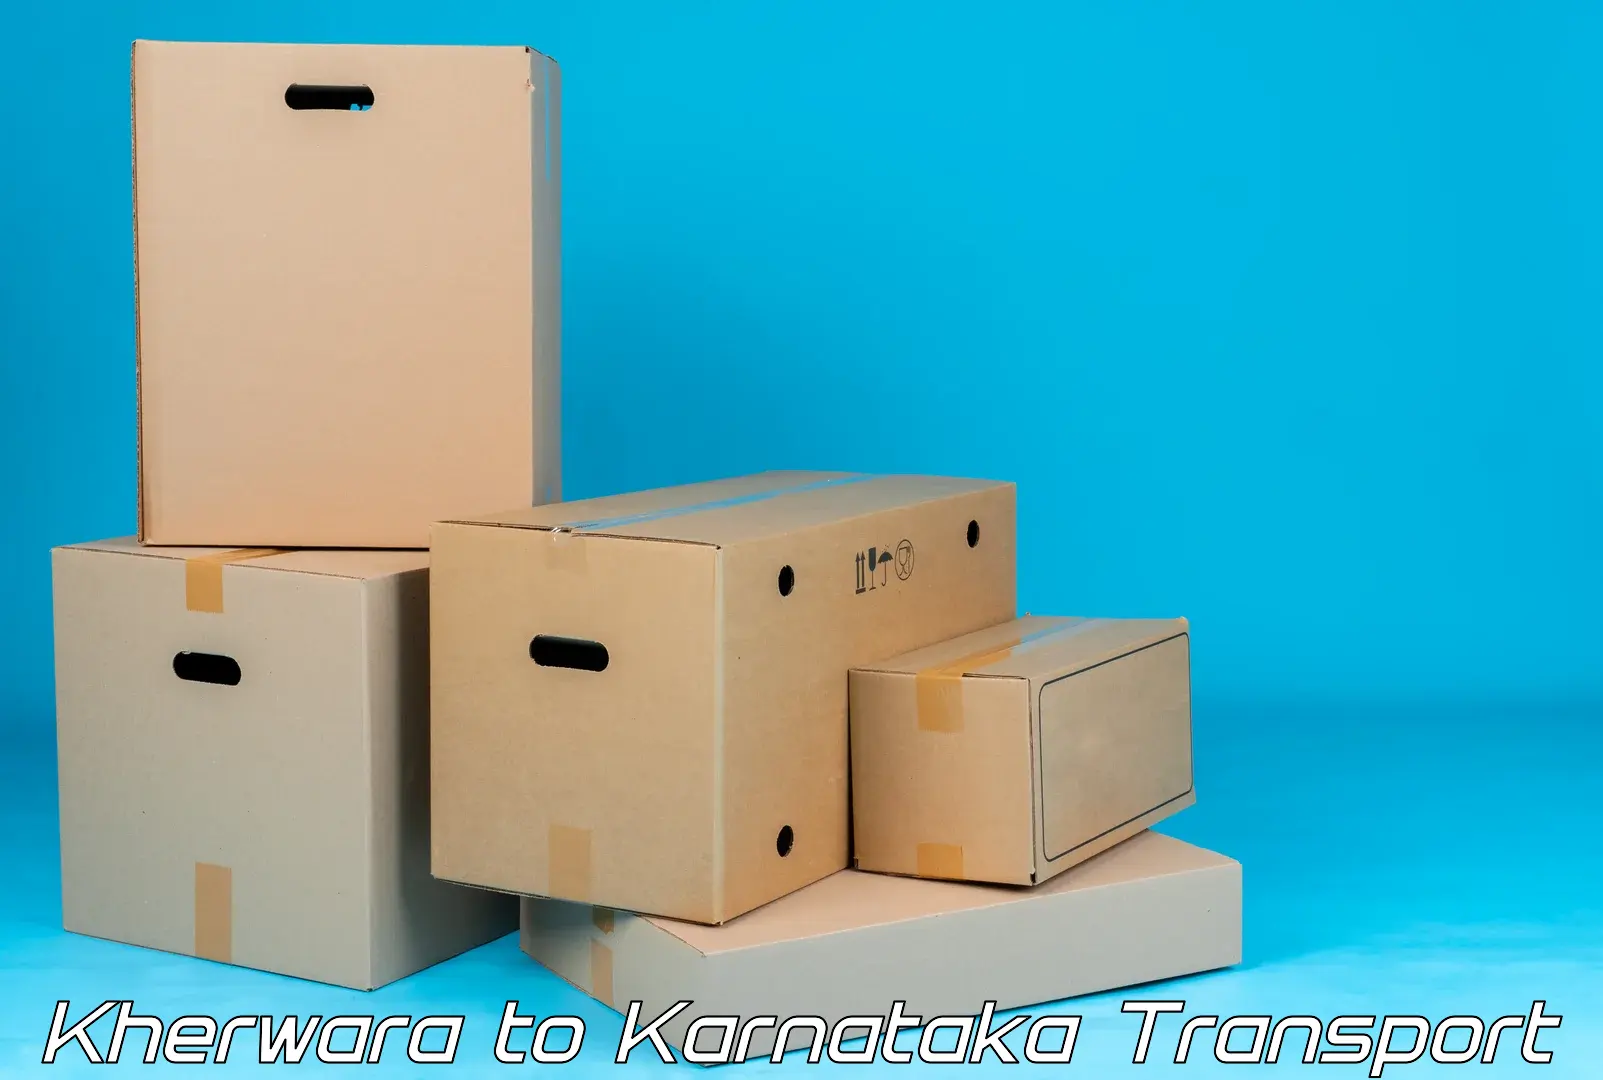 Vehicle transport services Kherwara to Karnataka